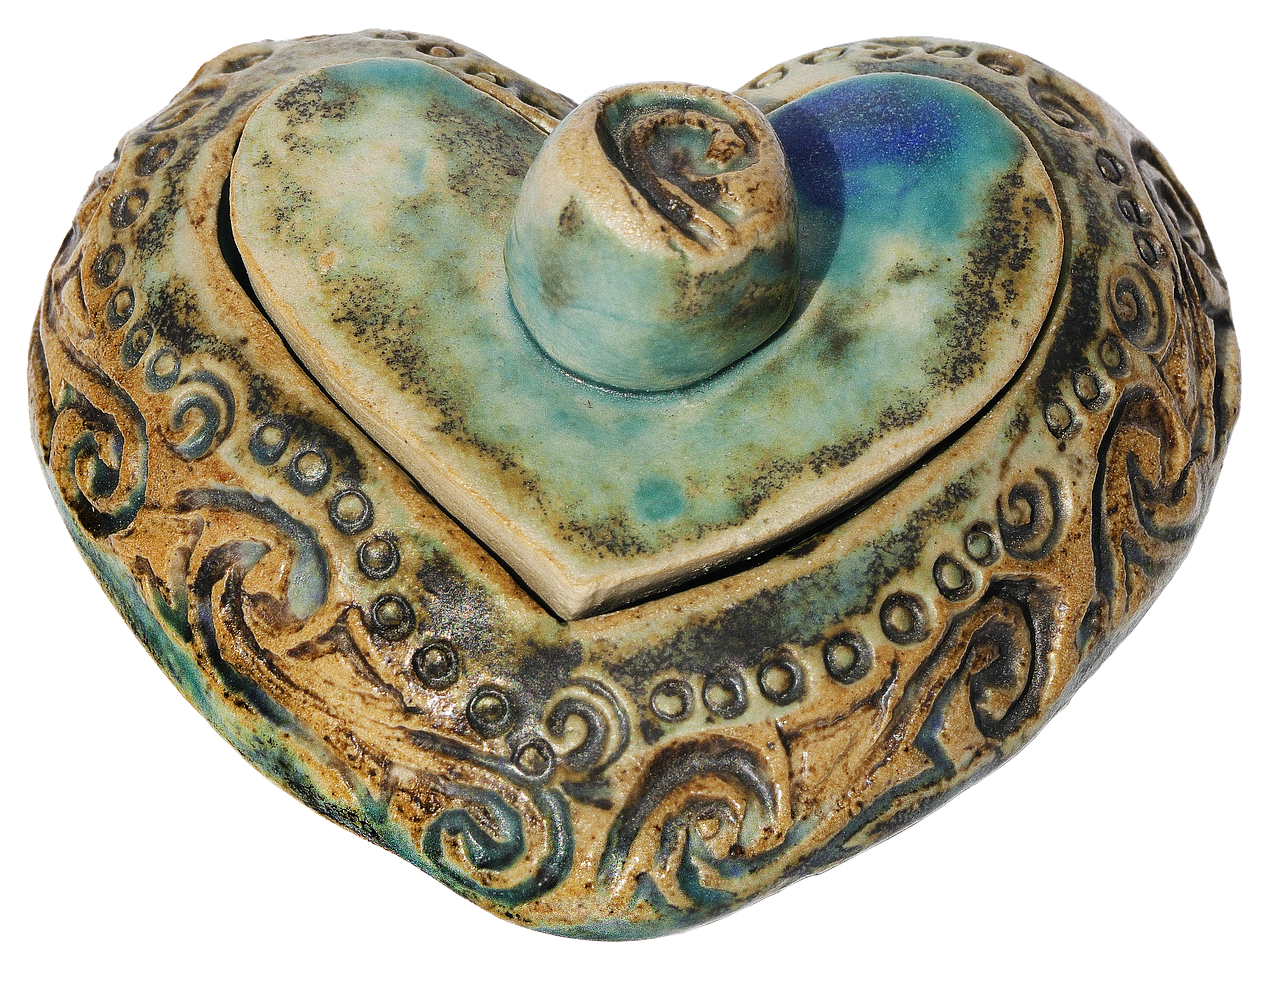 heart box ceramic heart free photo